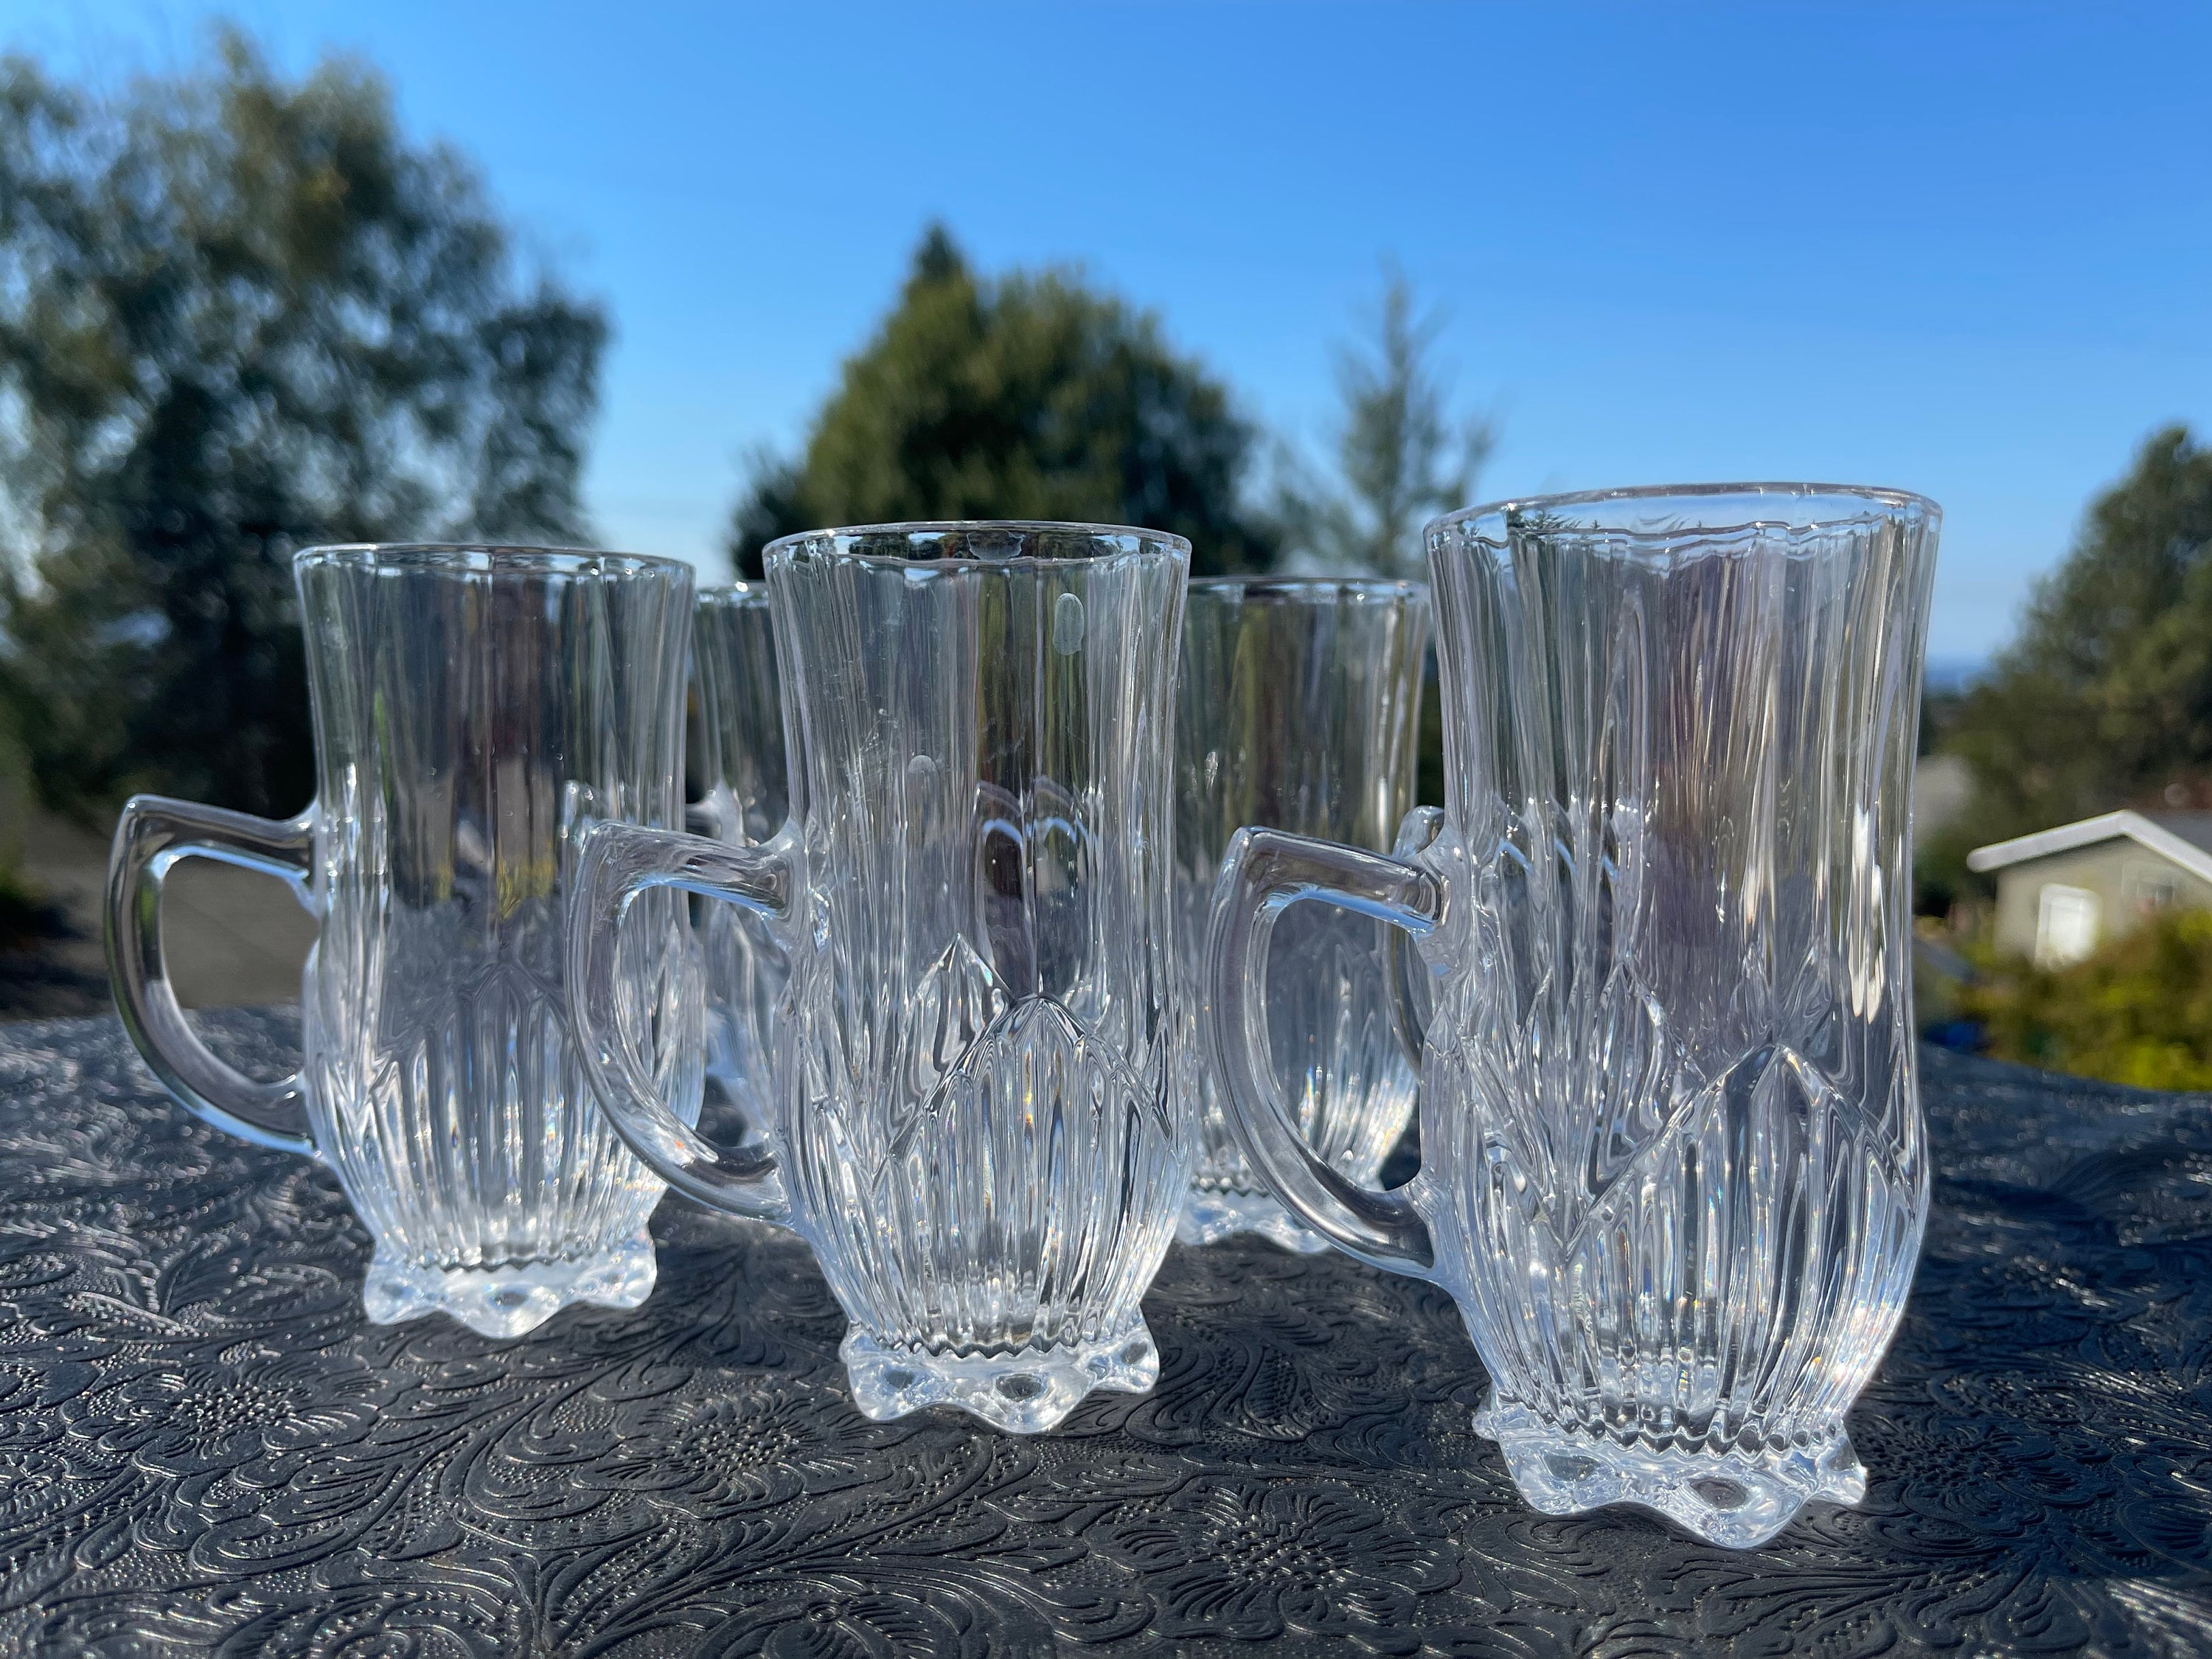 Beautiful glassware from Japan available at Miya!